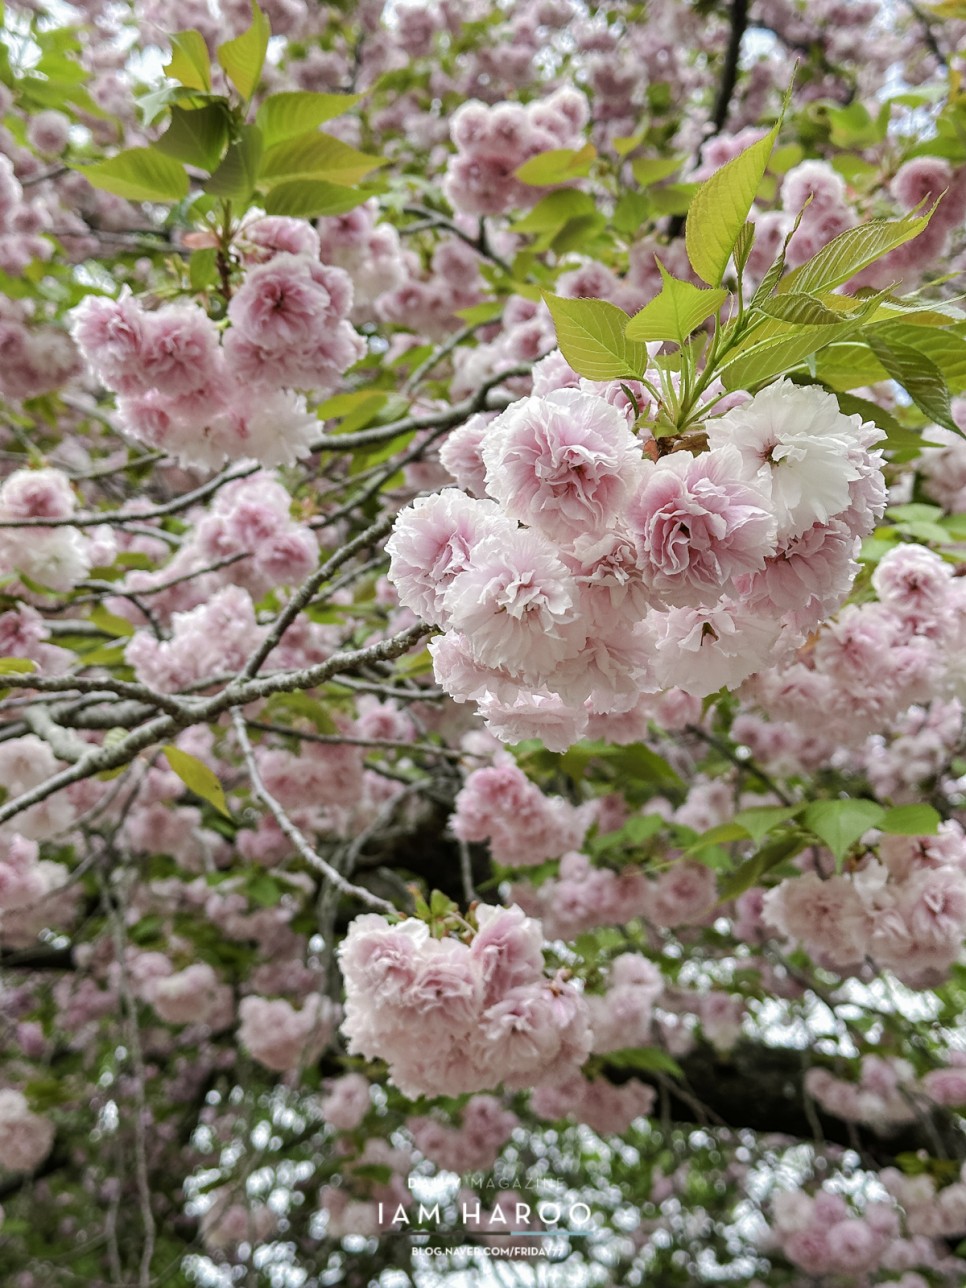 제주도 봄여행 4월 꽃구경 감사공묘역 제주 겹벚꽃 유채꽃밭 갯무꽃